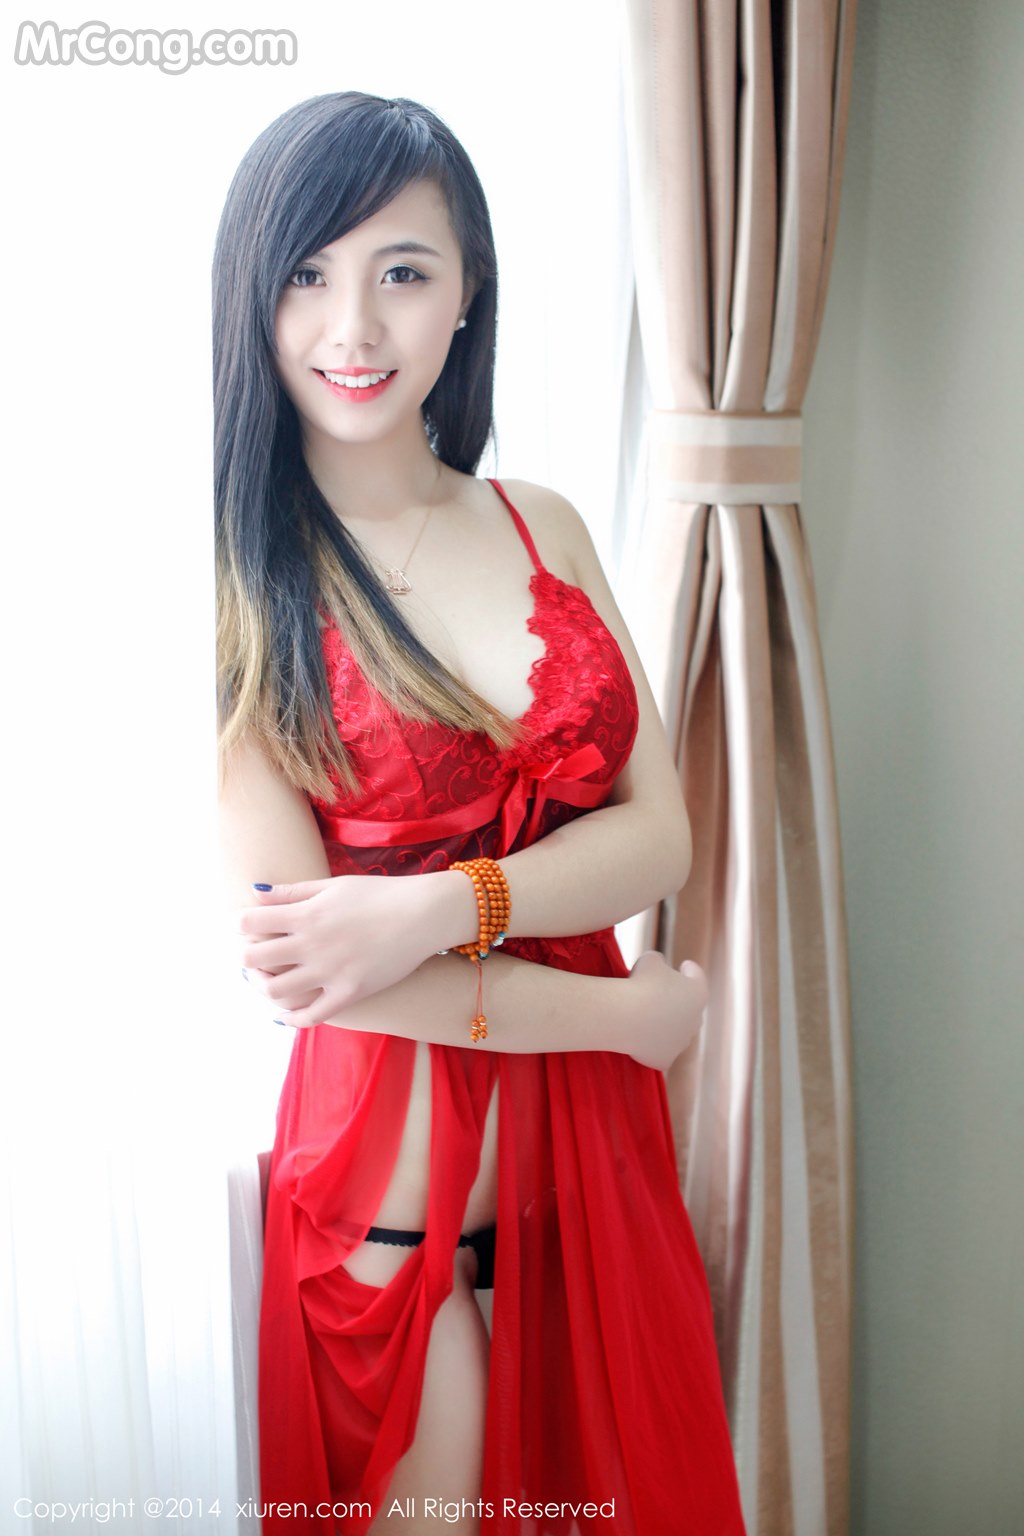 XIUREN No. 2254: Model Xie Chen Zhuo (谢忱 倬) (134 pictures)